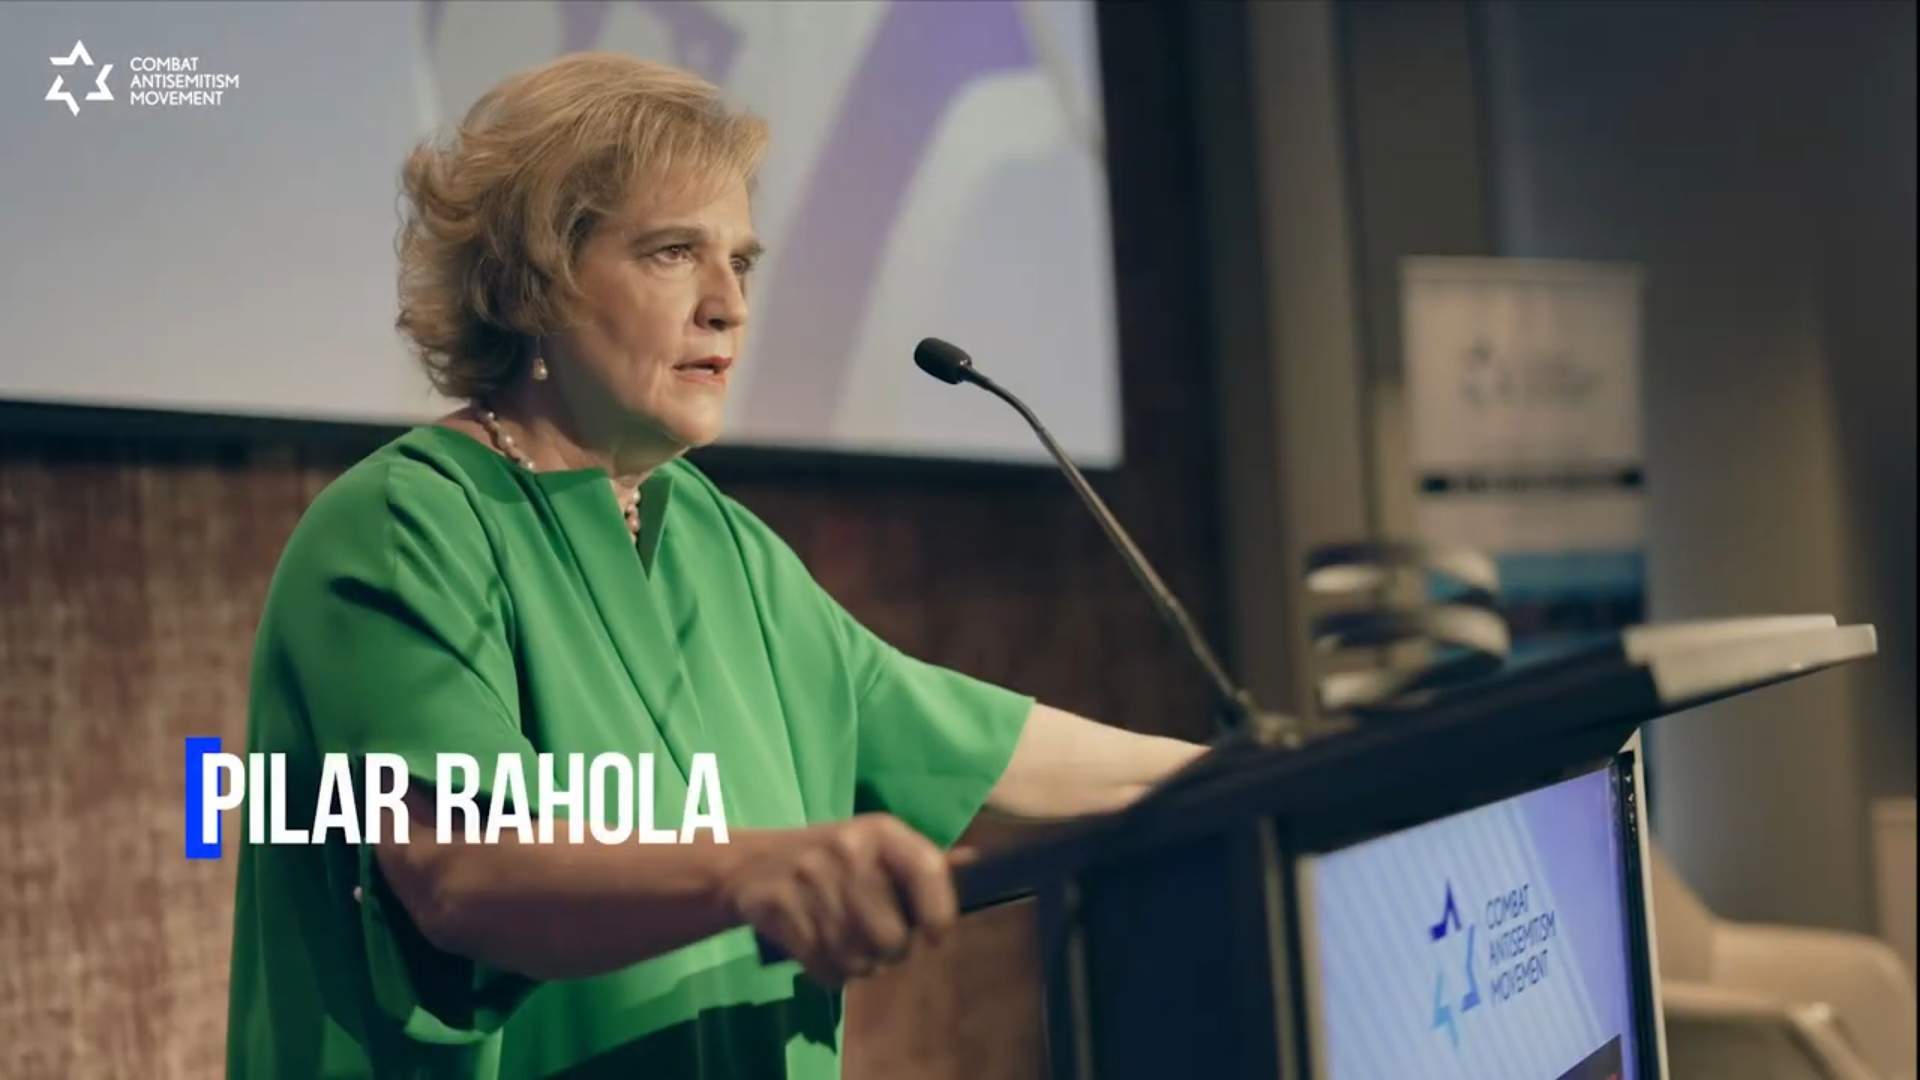 Rahola recibe un importante premio internacional en la lucha contra el antisemitismo